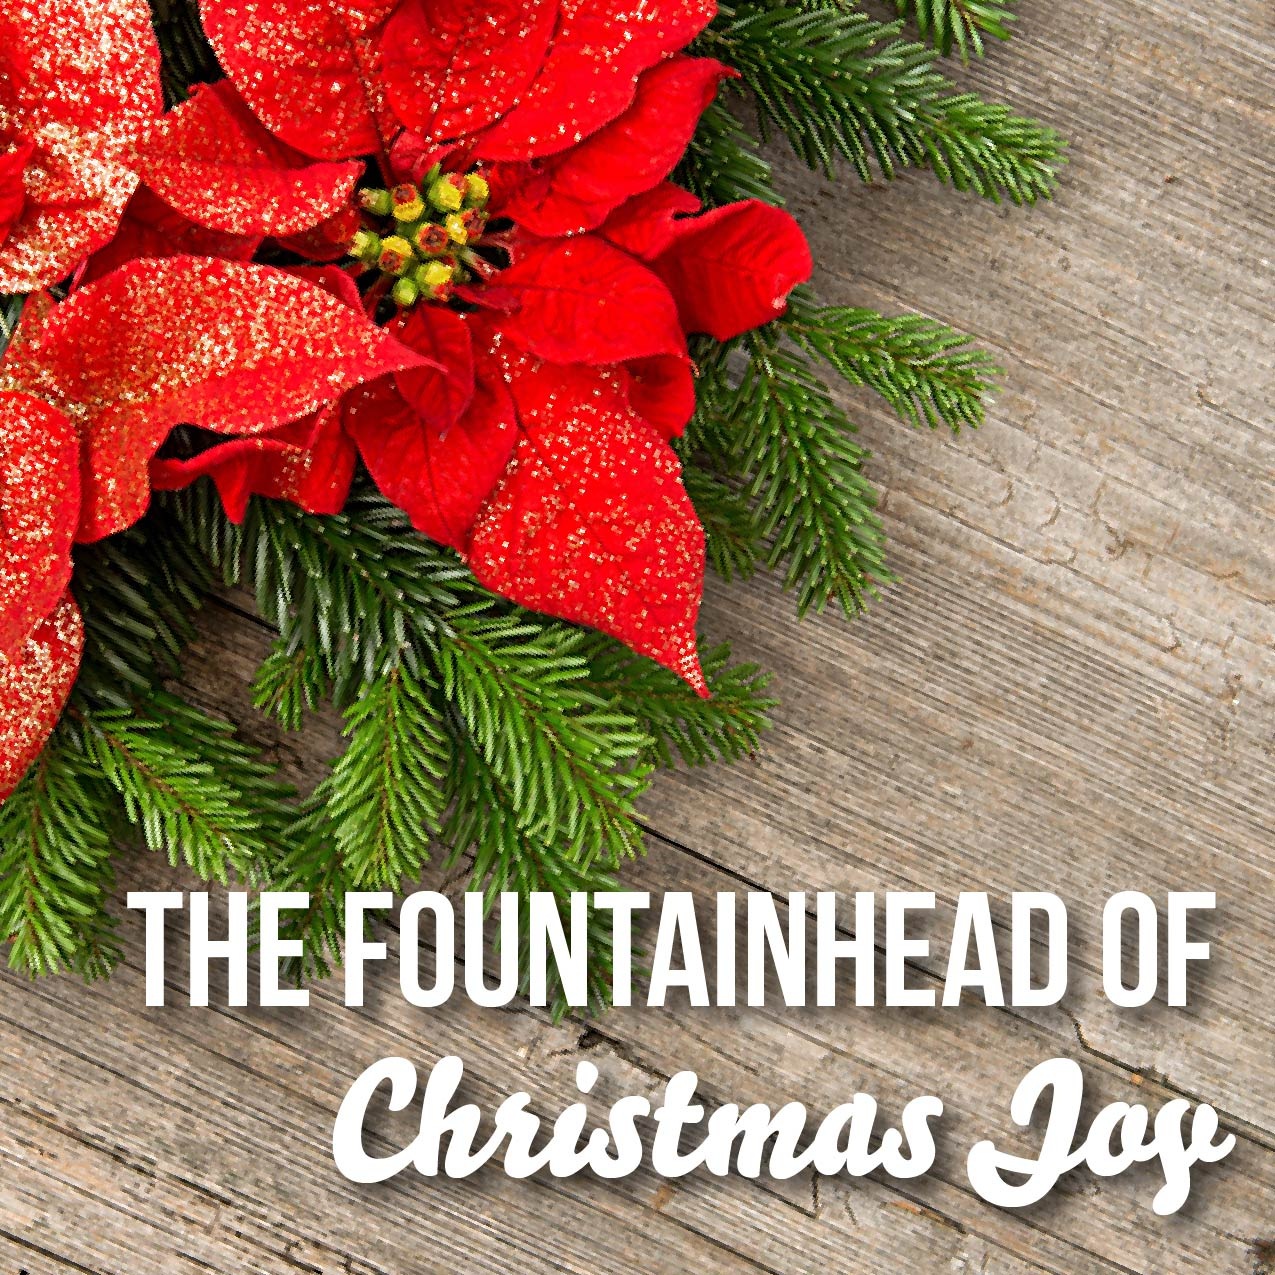 The Fountainhead of Christmas Joy